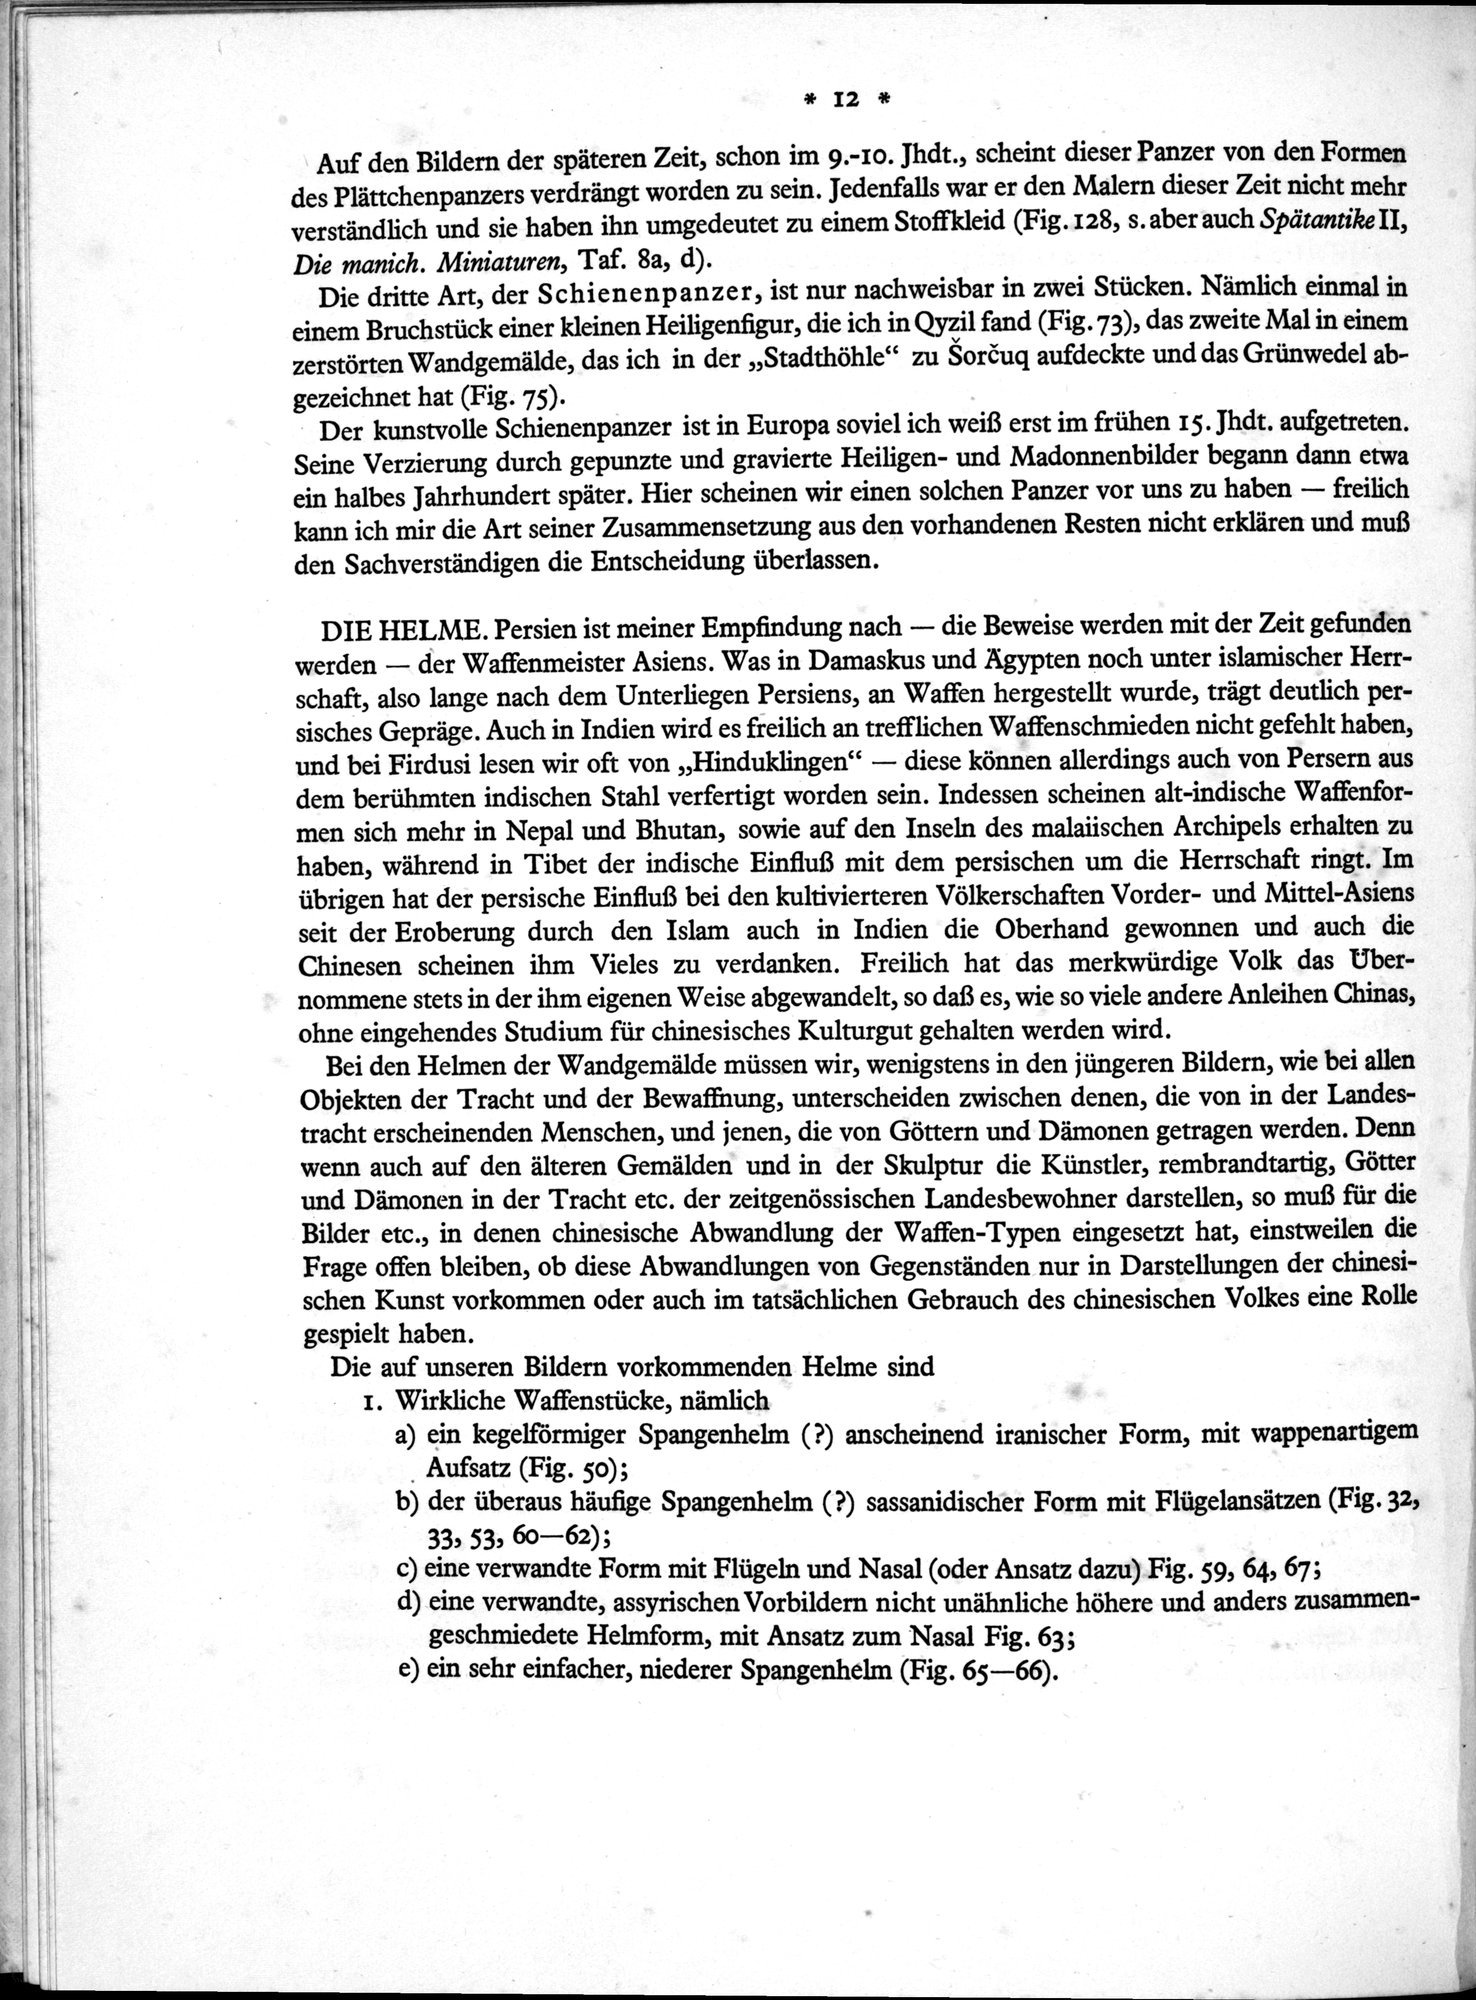 Bilderatlas zur Kunst und Kulturgeschichte Mittel-Asiens : vol.1 / Page 16 (Grayscale High Resolution Image)